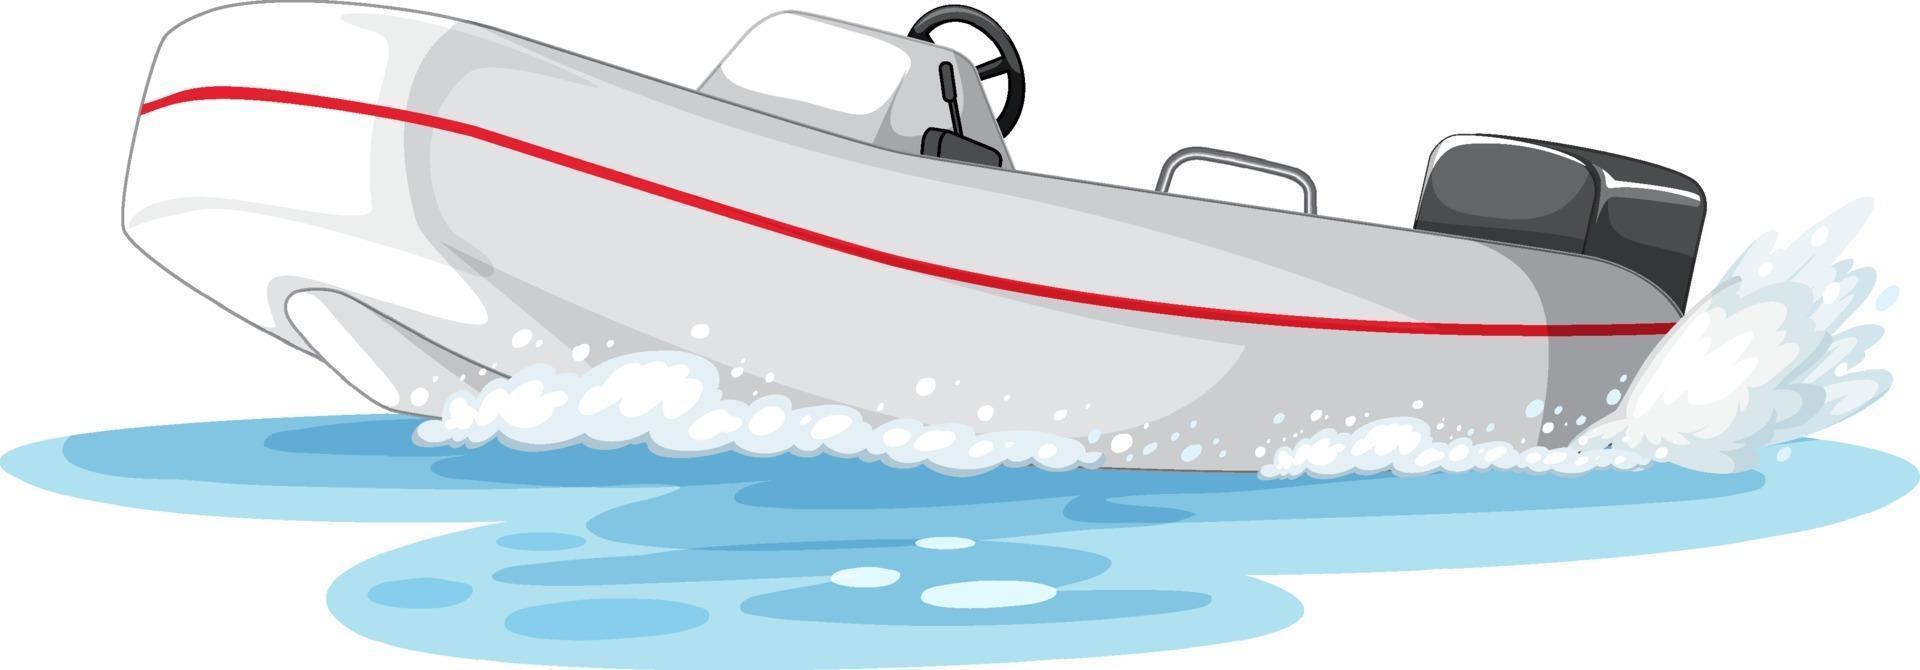 motorbåt eller motorbåt på vattnet vektor